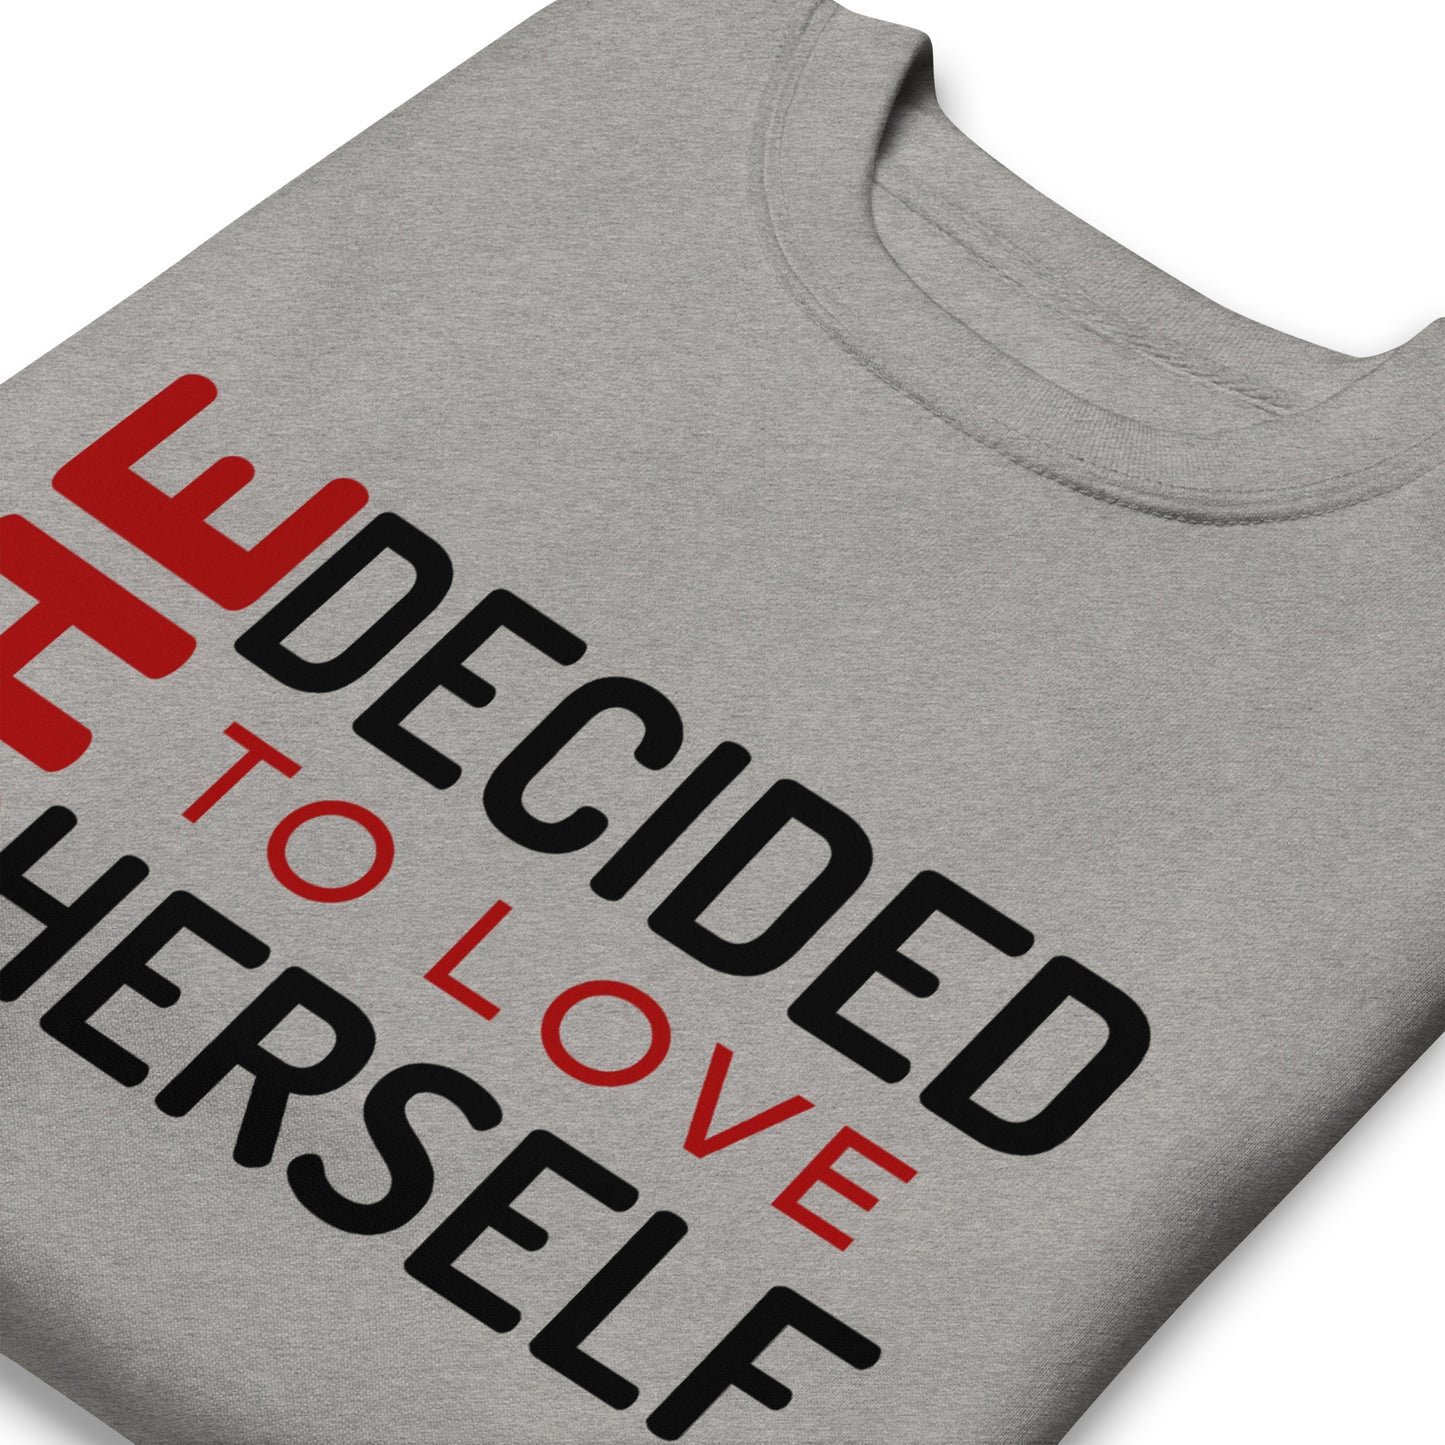 SHE DECIDED TO LOVE HERSELF - Unisex Premium Sweatshirt